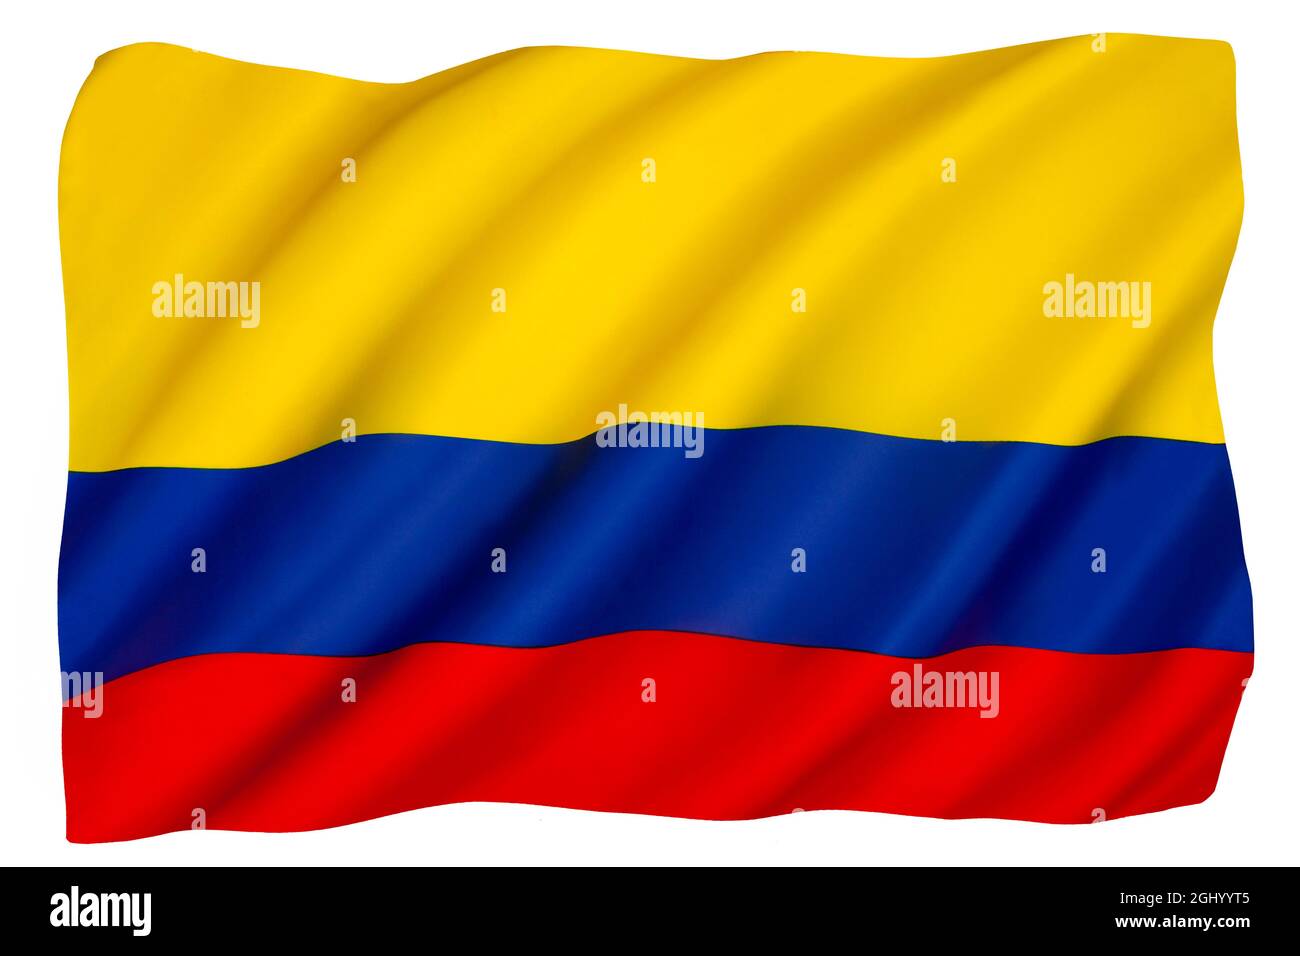 Le drapeau national de la Colombie. Adoptée le 20 juillet 1810 lorsque la Colombie a obtenu son indépendance de l'Espagne. Isolé sur un fond blanc pour découpe. Banque D'Images